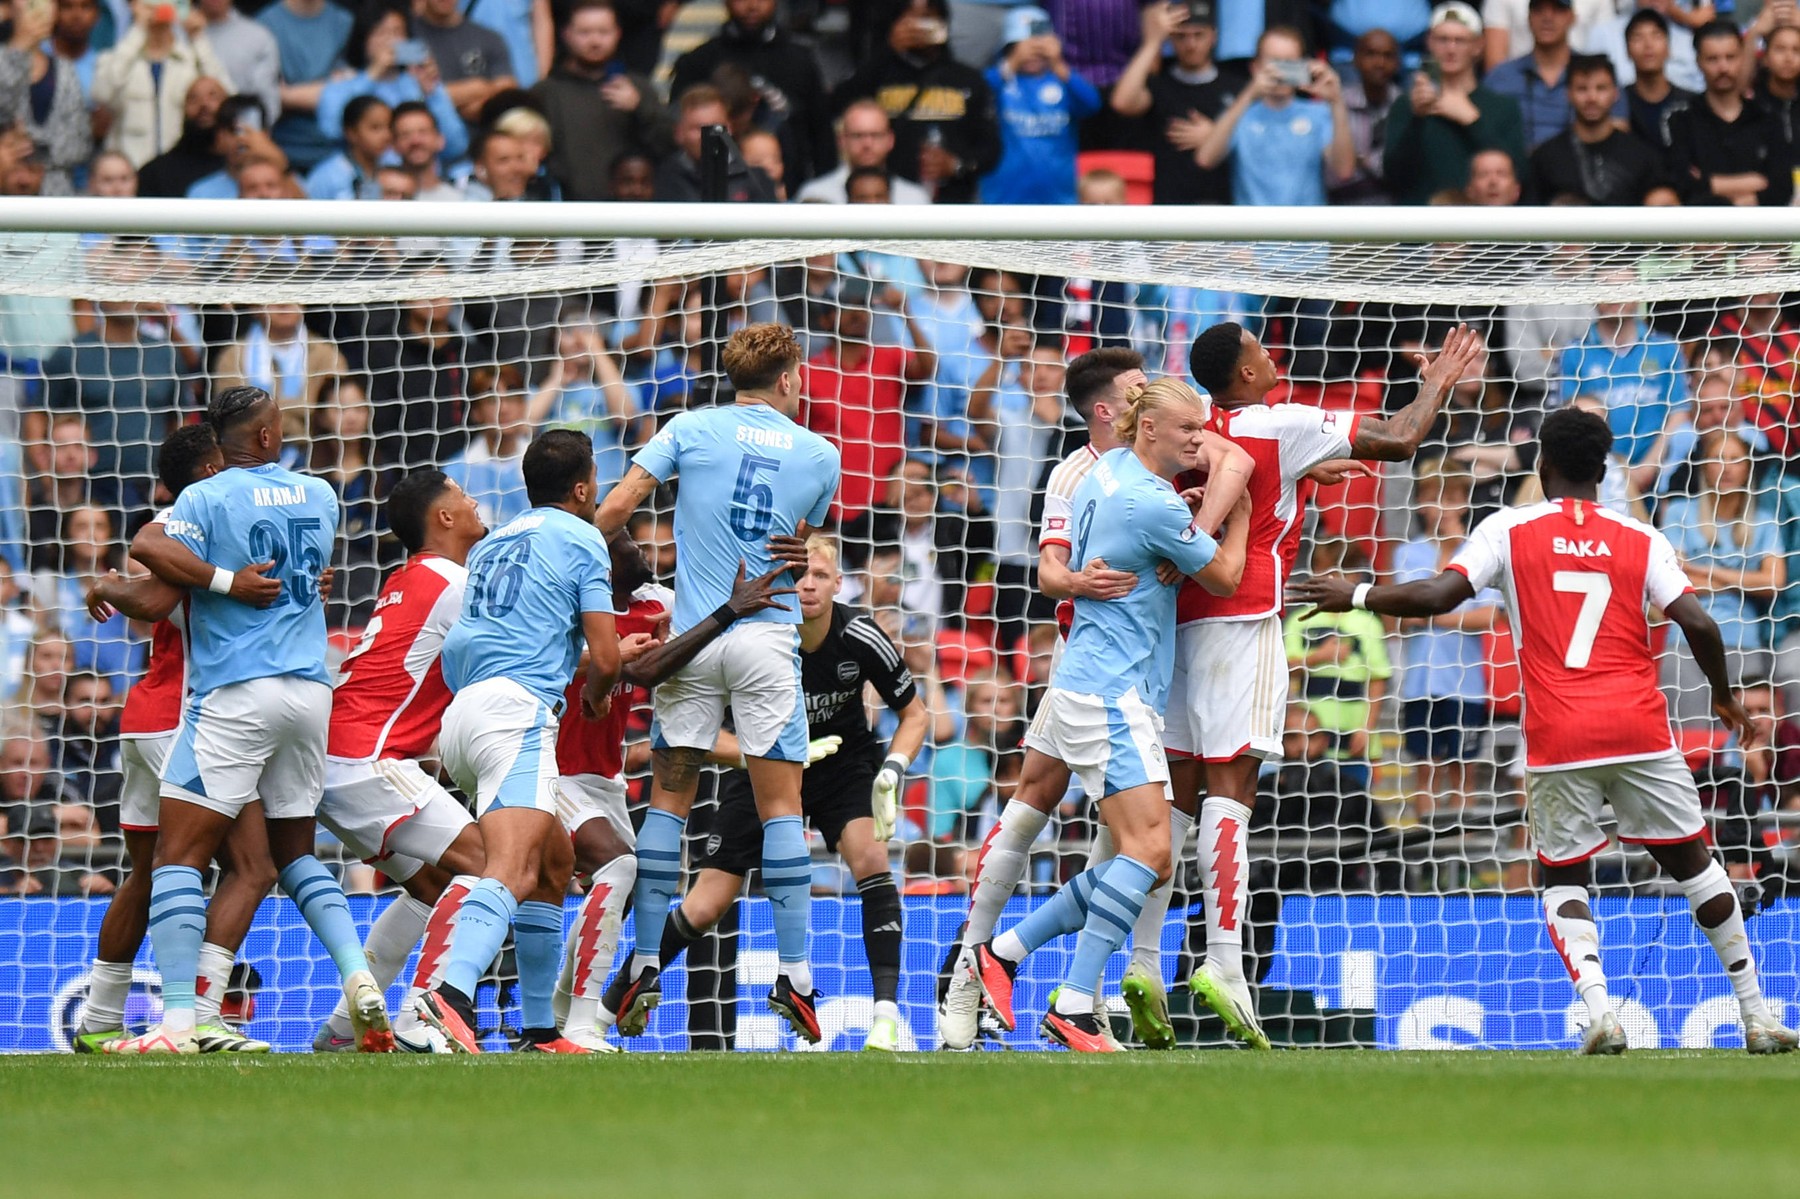 Arsenal - Manchester City, ACUM, Digi Sport 1. ”Cetățenii” au două eșecuri în ultimele trei meciuri